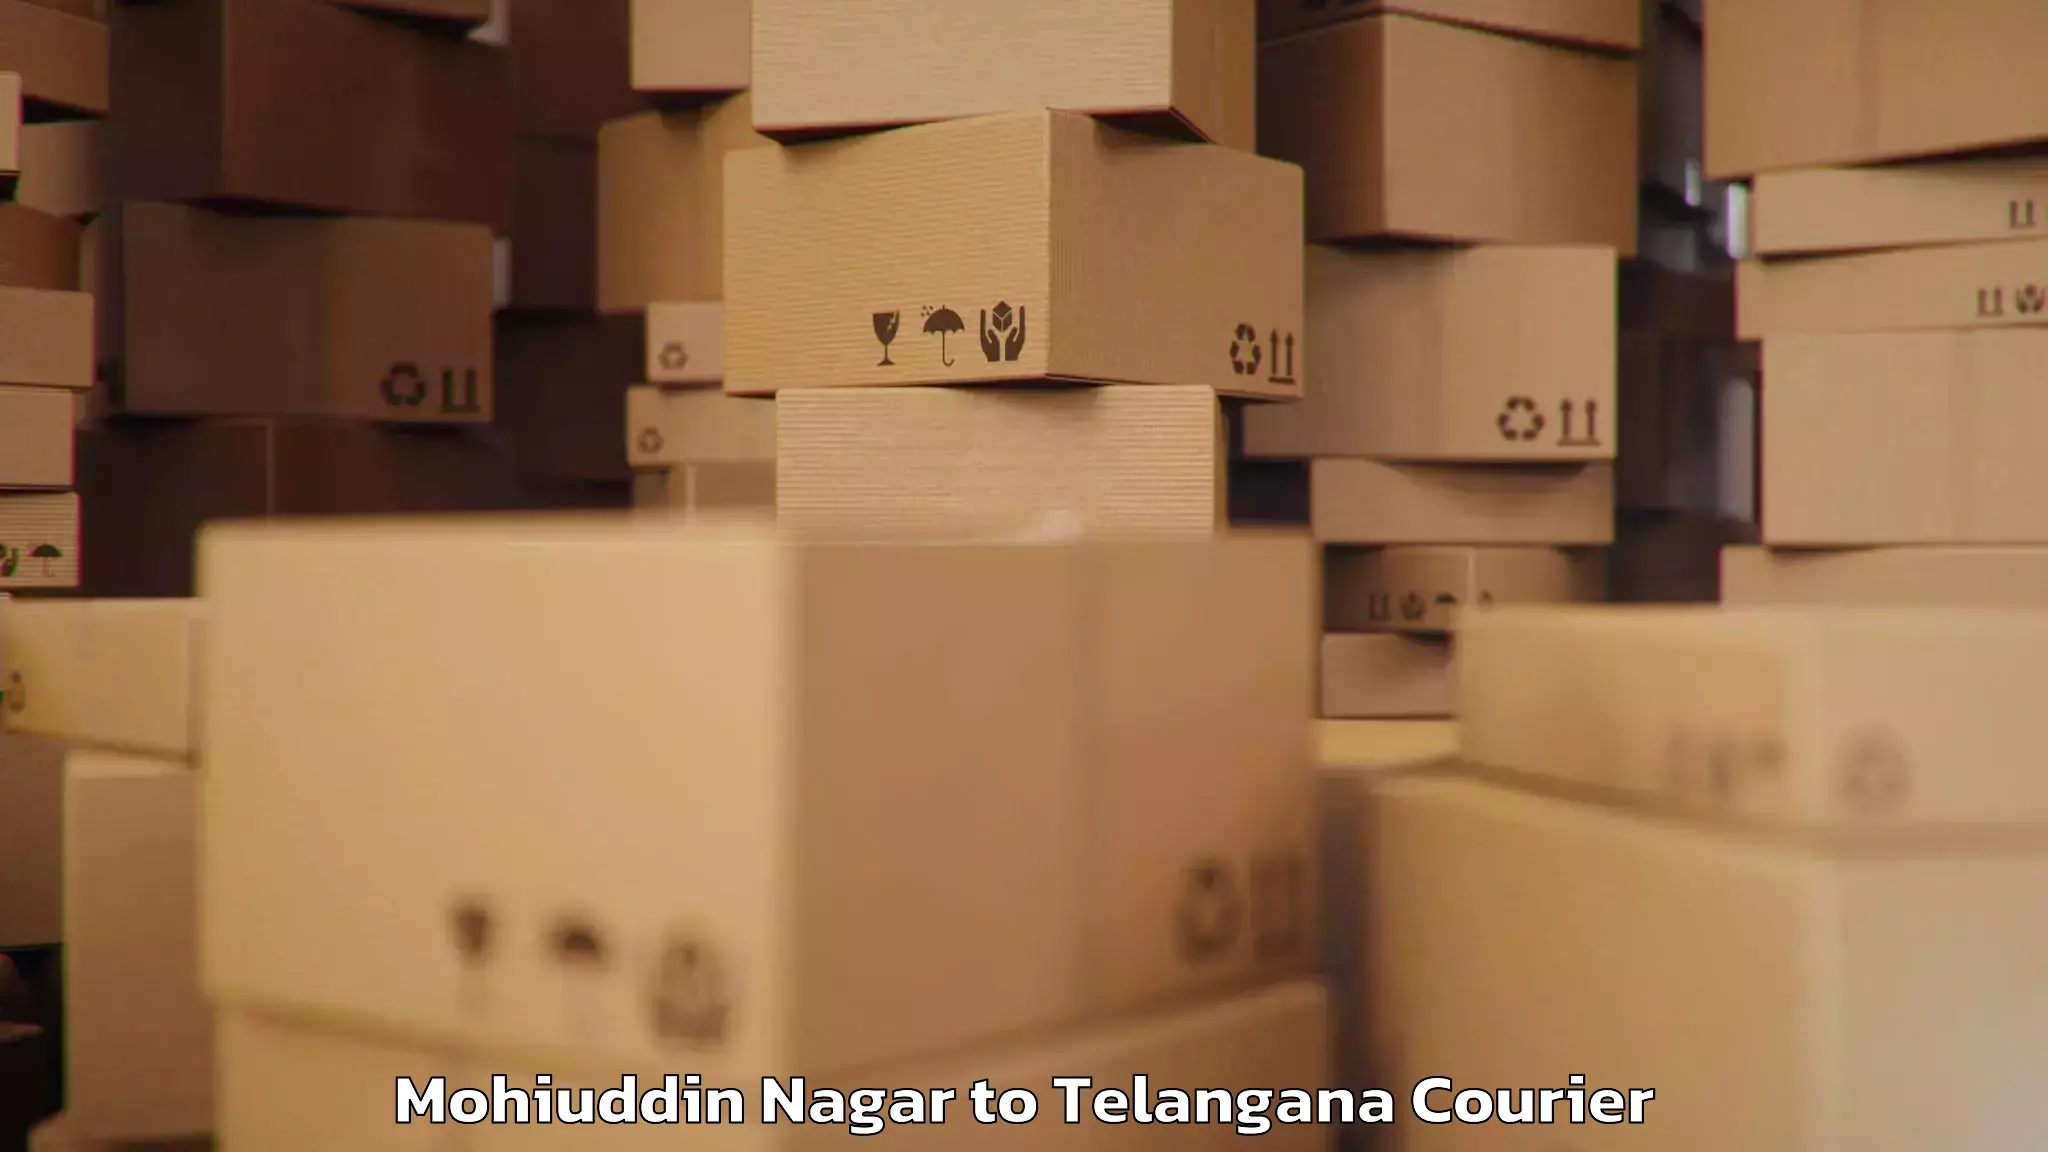 Baggage delivery optimization Mohiuddin Nagar to Telangana